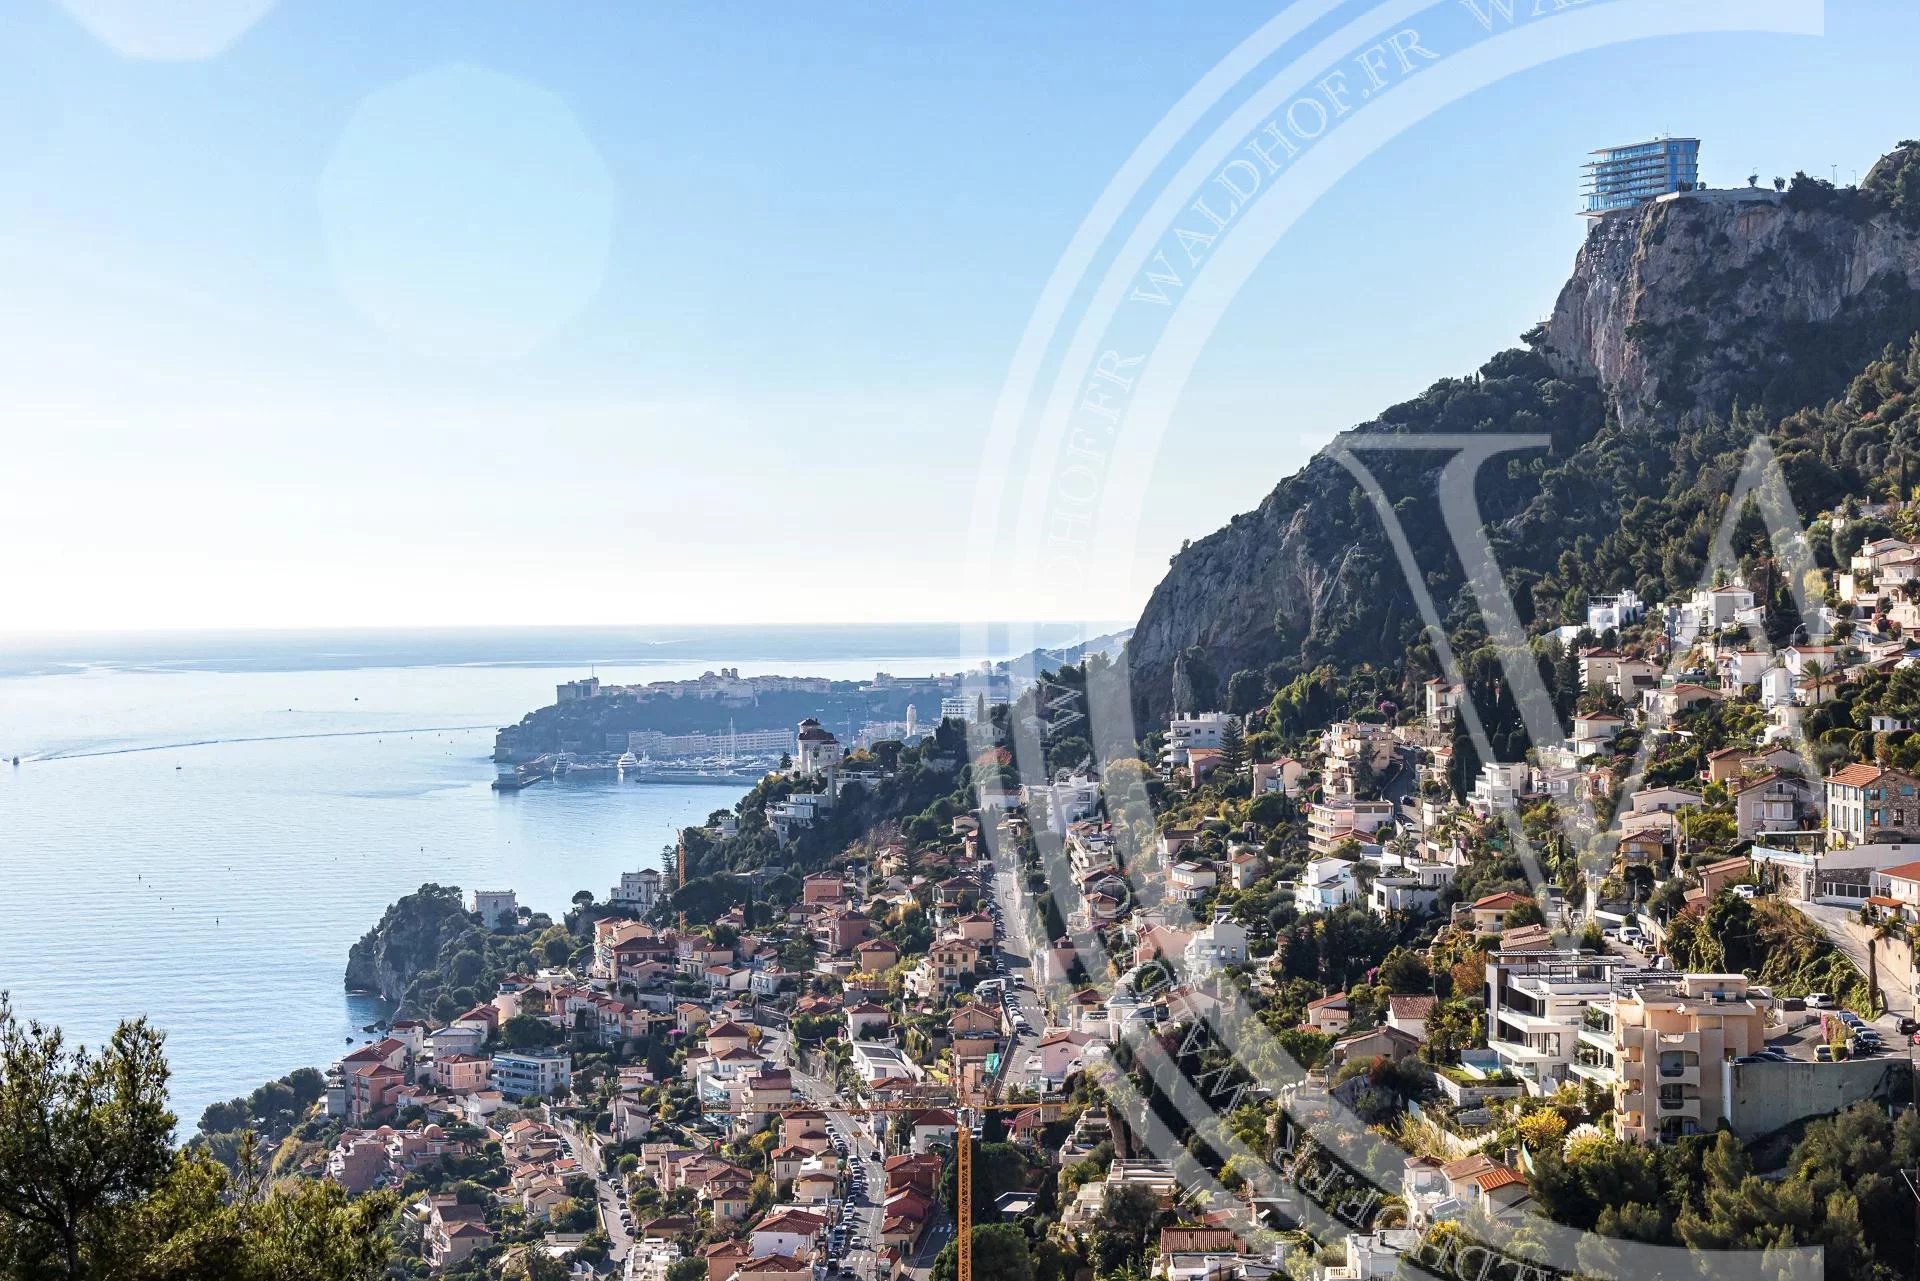 Newly renovated turn-key villa with view towards Monaco